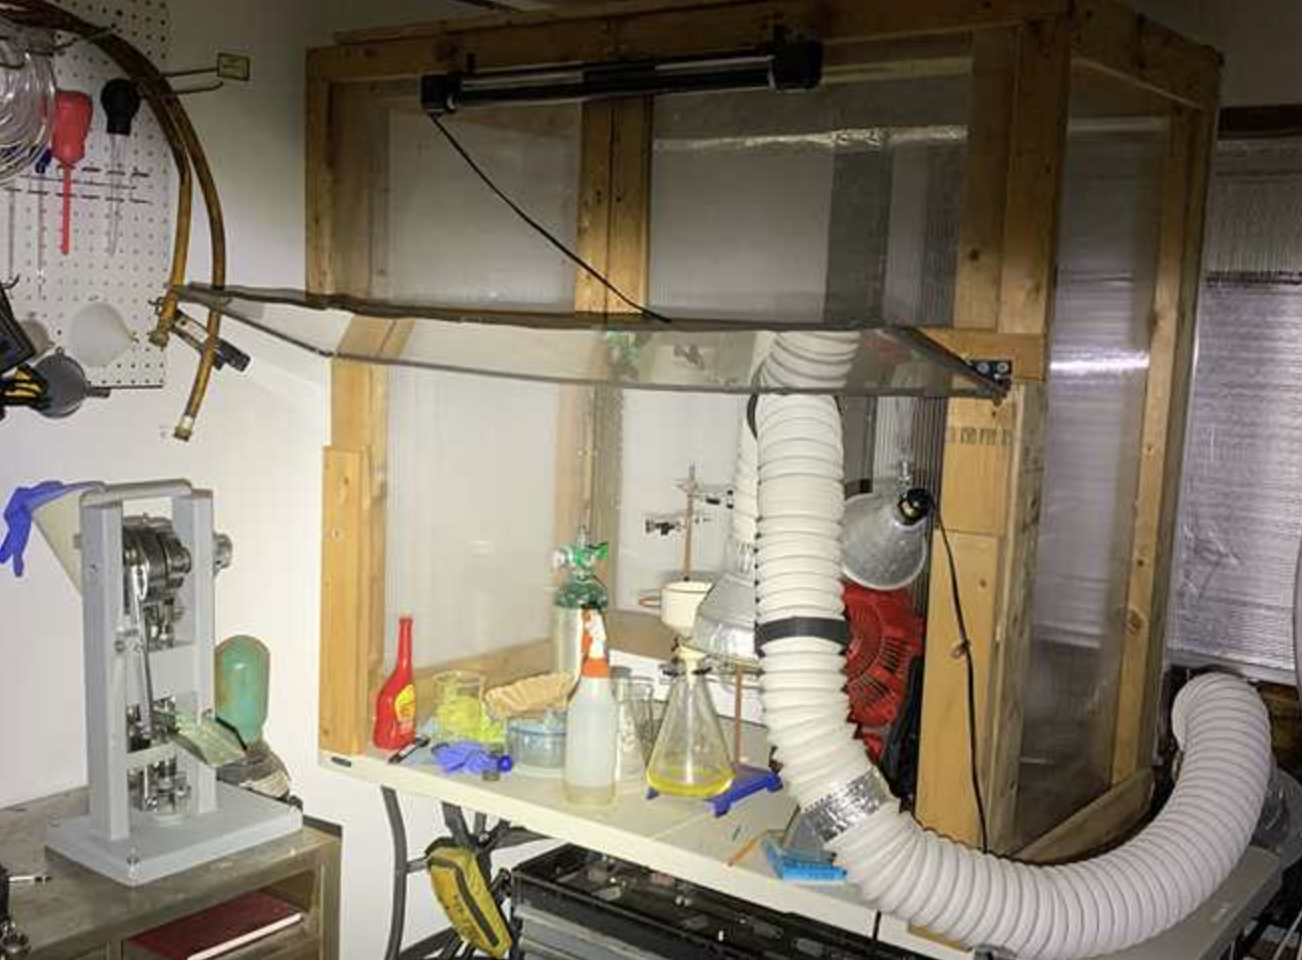 Meth lab in a garage or basement